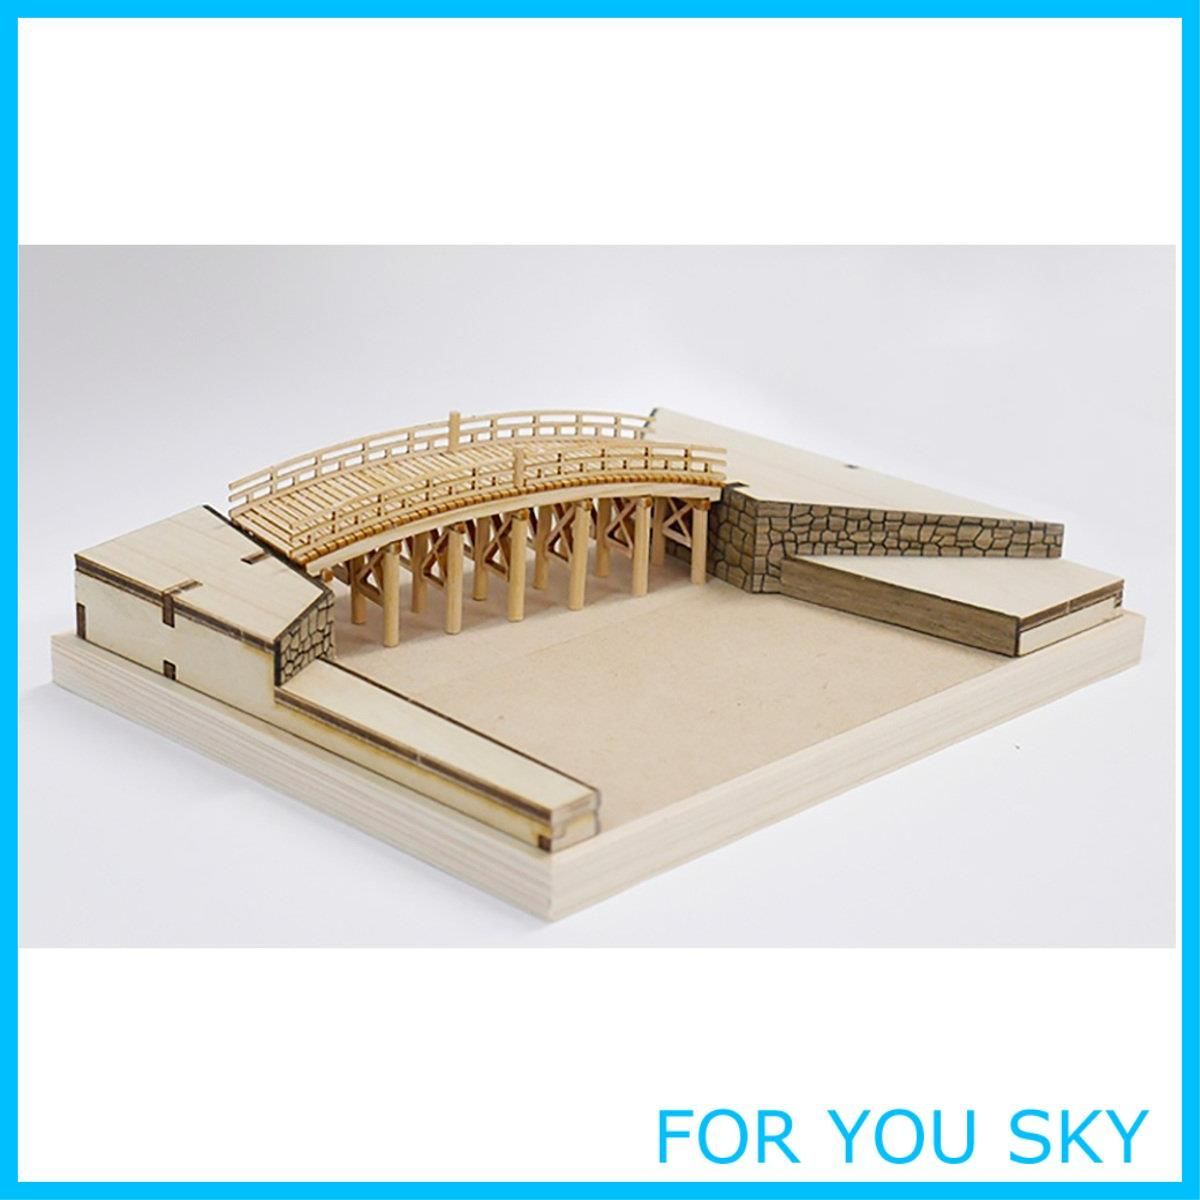 【新着商品】ウッディジョー 東海道五十三次シリーズ 日本橋 木製模型 ノンスケール 組み立てキット